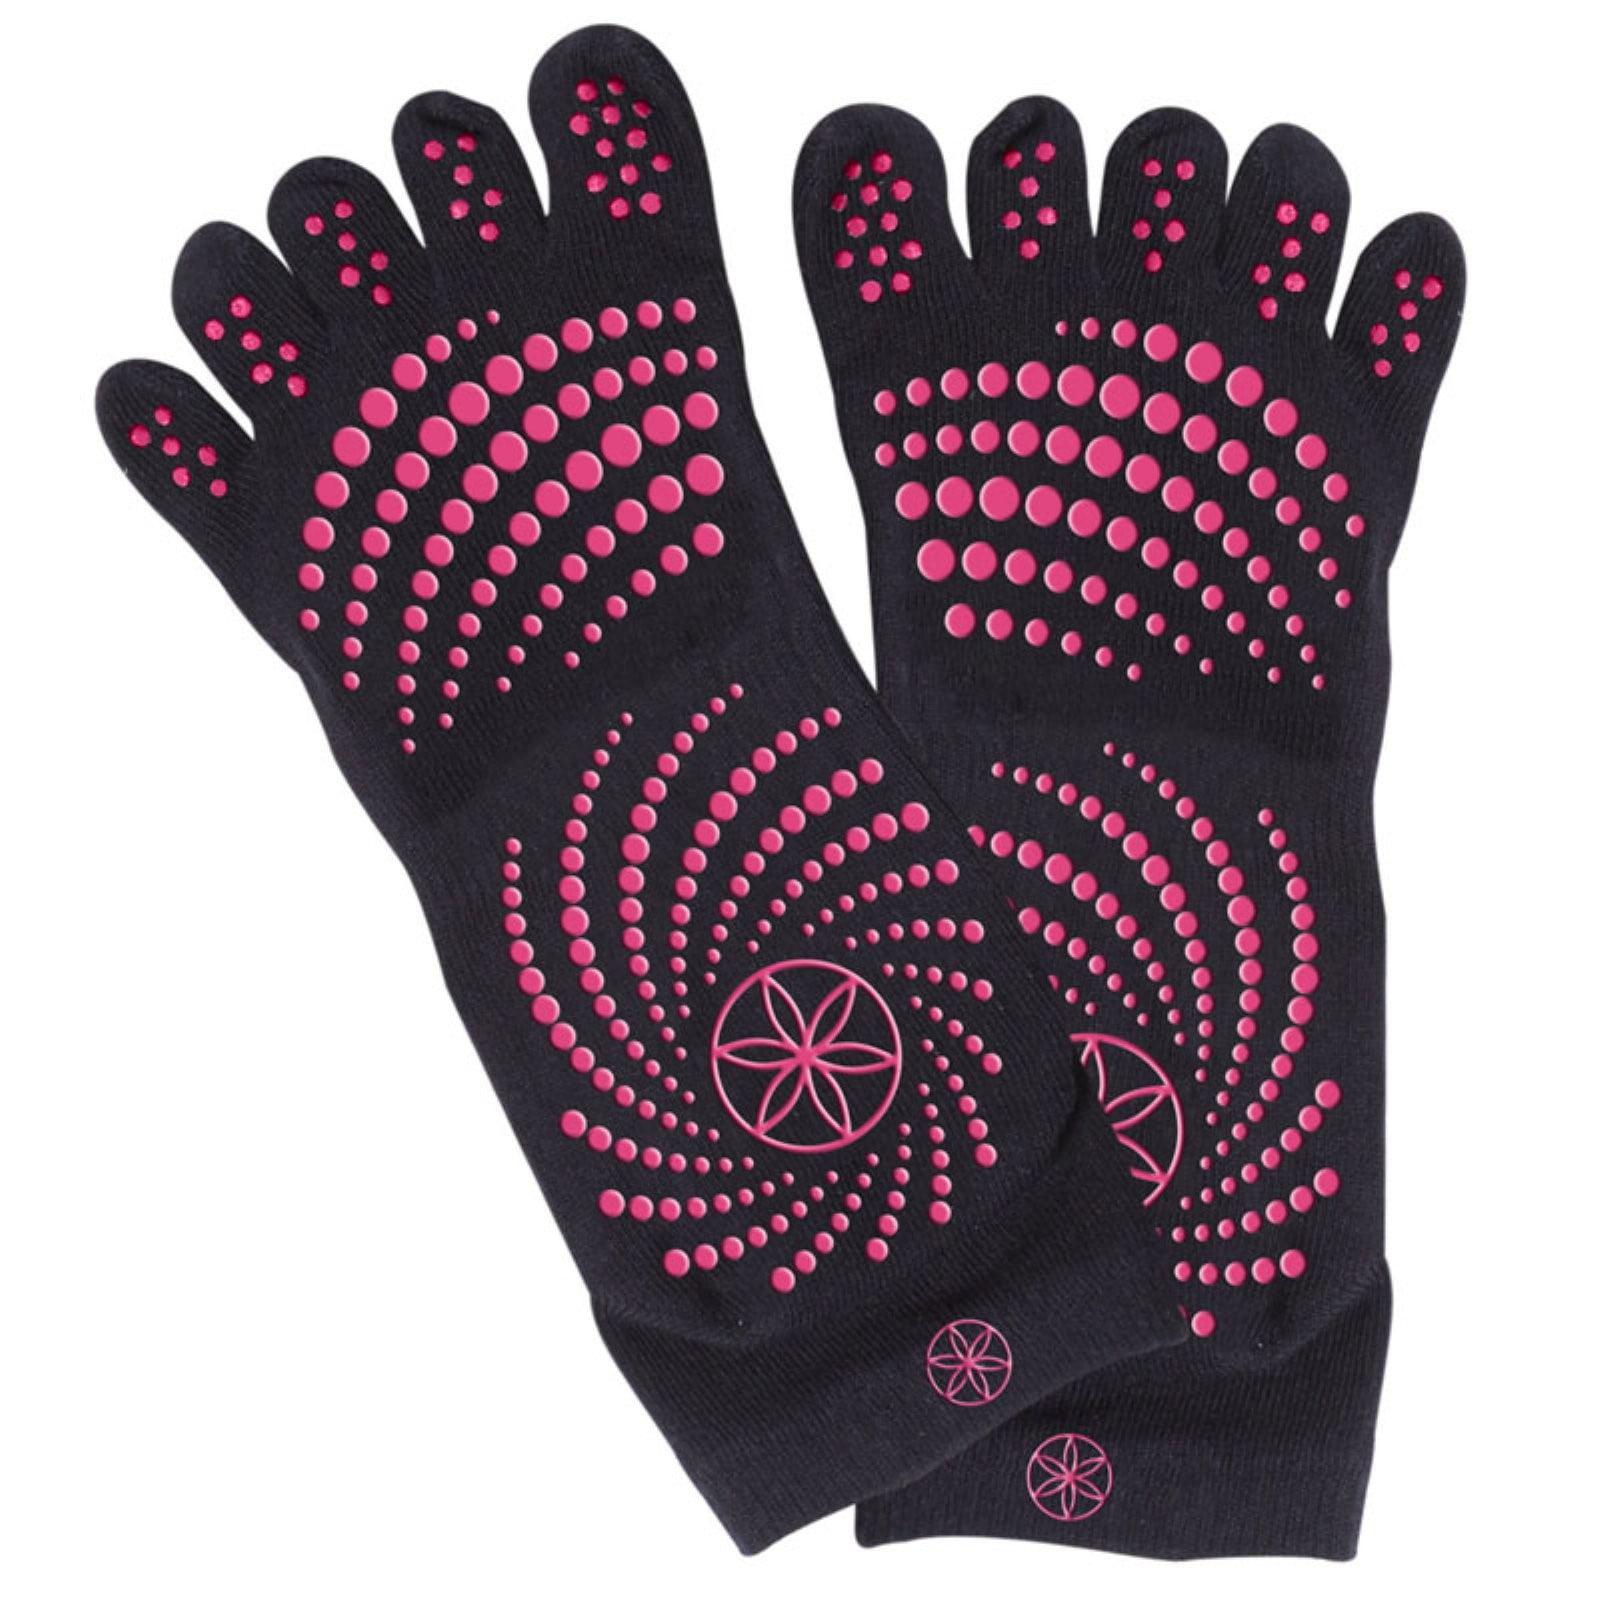 Gaiam All Grip Yoga Socks - Medium/Large - Black/Grey - Walmart